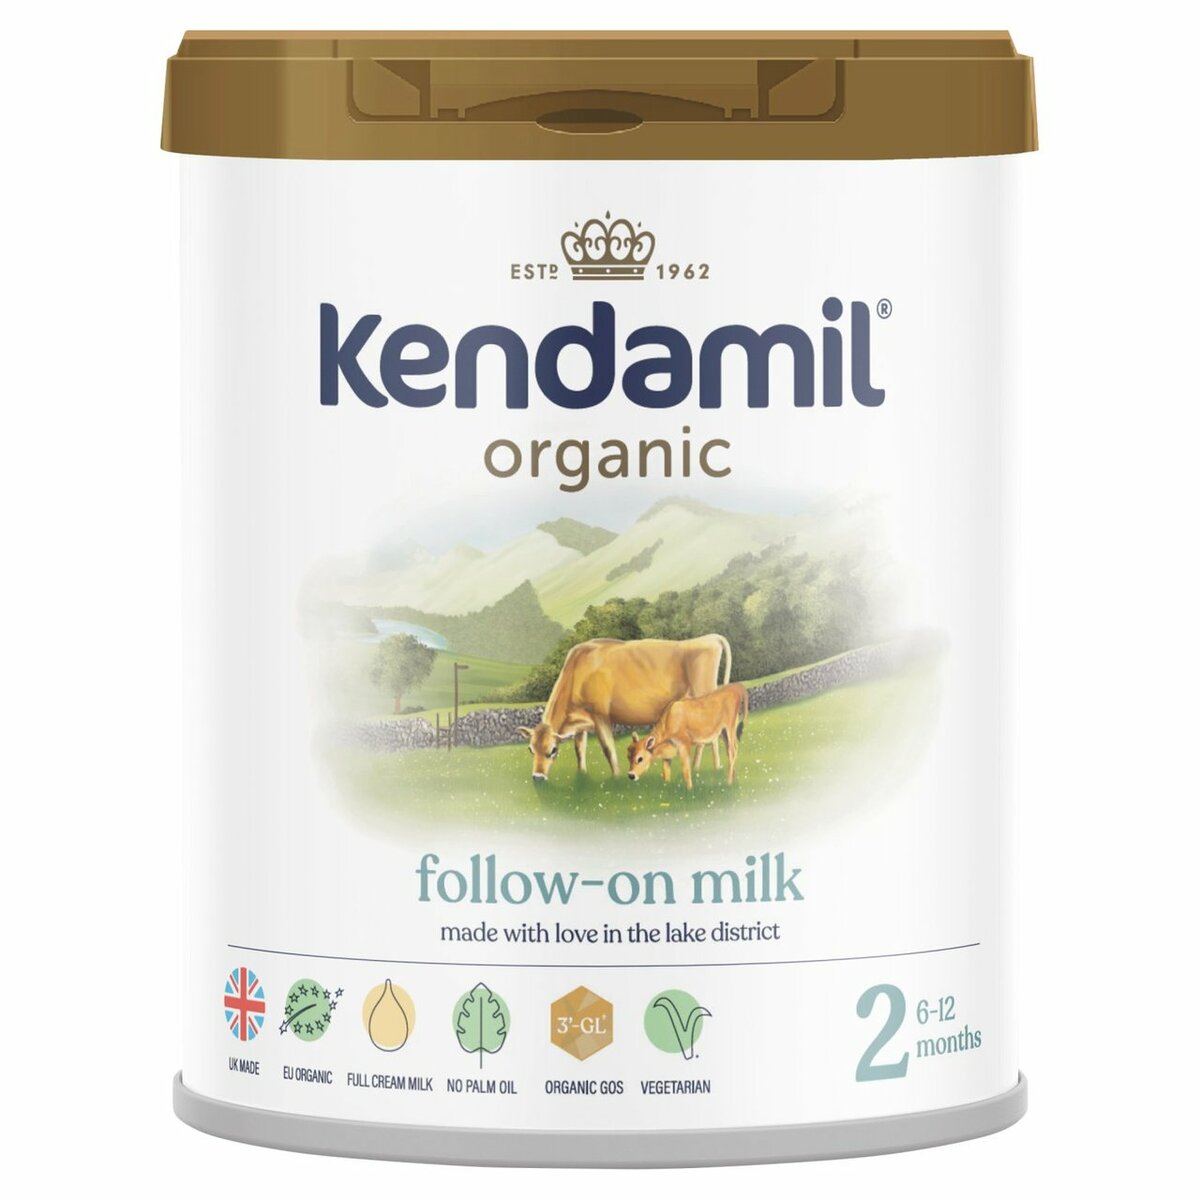 商品情報名称(一般的名称)Kendamil Organic 2 Follow-On Milk ( ケンダミルオーガニック )原材料名(使用した原材料)特定原材料表記：乳内容量800g(1個あたり）用意・使用方法1. 手を洗い、哺乳瓶などご利用になるすべての用具を製造者の指示に従って滅菌してください。2. 1リットルの新鮮な水を 沸騰後冷まします。30分以上は冷まさないようにしてください。人工的に軟化した水、または繰り返し沸騰した水は使わないでください（沸騰後、約30分ほど冷ます）。必要な分量のお湯を殺菌させた哺乳瓶に入れてください(Feeding Guide参考)。（ 哺乳瓶にお湯と粉ミルクを入れる順番は日本の粉ミルクの作り方と異なっております。日本では通常ミルクを作るときには最初粉ミルクを哺乳瓶に入れてからお湯をいれますが、 ケンダミルミルクは逆にお湯を哺乳瓶に入れてから粉ミルクを入れます。1スクープ 粉ミルクで30mlのお湯を使用します。）3. 提供されたスクープを使って正しい量の粉ミルクを入れてください。 計量の際、粉ミルクをスプーンに押しつけないでください。4. 殺菌された乳首と蓋をを哺乳瓶にはめてから粉ミルクが完全に溶けるまで振って下さい（約10秒）。5. 哺乳瓶を流水（水道水）で適温（約37度）まで冷まします。飲ませる前は必ずミルクの温度を確認してください。使用量・フィーディング回数年齢:　 6か月以上一日当たり約500-600ml【1回分の参考分量】1回当たり150mlのお湯を使用 （5スクープ 粉ミルク）(出来上がりミルク約170ml)1回当たり180mlのお湯を使用 （6スクープ 粉ミルク）(出来上がりミルク約200ml)1回当たり210mlのお湯を使用 （7スクープ 粉ミルク）(出来上がりミルク 約230ml)材料・成分オーガニック全乳、有機脱塩乳ホエイプロテインパウダー、有機スキムミルク、有機植物油（ヒマワリ、ココナッツ、菜種）、有機ガラクトオリゴ糖（牛乳由来）、クエン酸カルシウム、クエン酸ナトリウム、塩化カリウム、乳酸カルシウム、塩化マグネシウム、 ドコサヘキサエン酸、ビタミンC、水酸化カリウム、酒石酸コリン、イノシトール、アラキドン酸、タウリン、ヌクレオチド（シチン-5'-一リン酸、ウリジン-5'-一リン酸二ナトリウム、アデノシン-5'-一リン酸、イノシン-5'-一リン酸二ナトリウム 、グアノシン-5'-一リン酸二ナトリウム）、ピロリン酸鉄、硫酸亜鉛、ビタミンE、ナイアシン、パントテン酸、硫酸銅、チアミン、リボフラビン、ビタミンA、ビタミンB6、硫酸マンガン、葉酸、ヨウ化カリウム、セレン酸ナトリウム、ビタミン K、ビタミンD3、ビオチン、ビタミンB12賞味期限別途ラベル記載保存方法常温発送国イギリス配送業者ヤマト宅急便（追跡番号付き）商品を発送後追跡番号は確認でき次第メールにてご連絡させて頂きます。配送期間注文確定後、7-14日以内に商品をお届けいたします。正確なお届け日についてはお届け先へ到着1-2日前にメ-ルにて再度ご連絡致します。【800g 2個セット・6カ月から】Kendamil Organic（ケンダミル オーガニック）2 Follow-On Milk パーム油フリー 乳児用粉ミルク【6ヶ月から】【英国発送】 Kendamil Organic（ケンダミル オーガニック） 乳児用粉ミルク 2